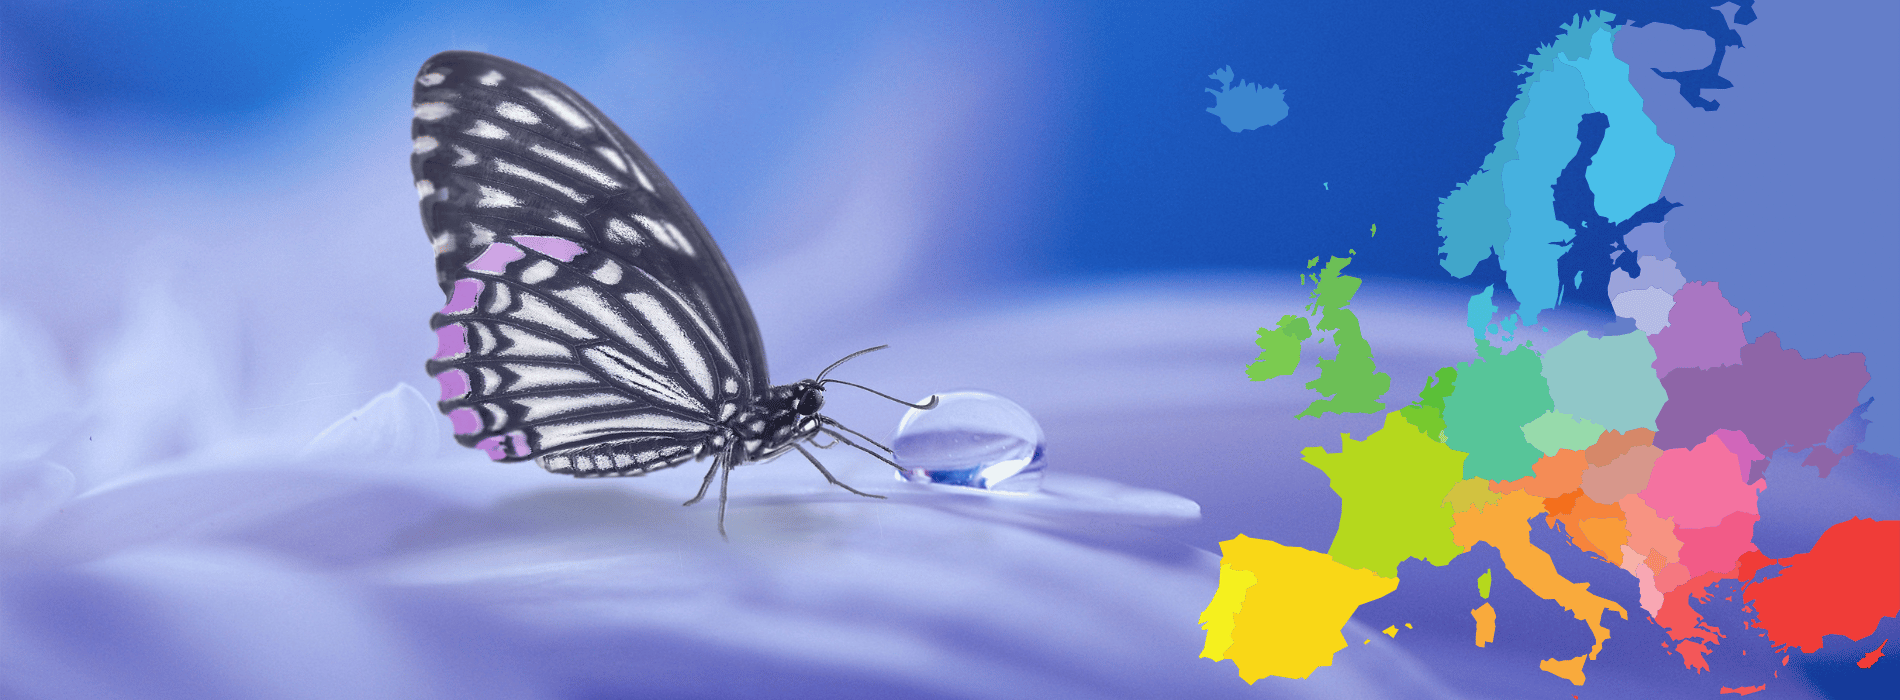 simbolismo de la mariposa europa